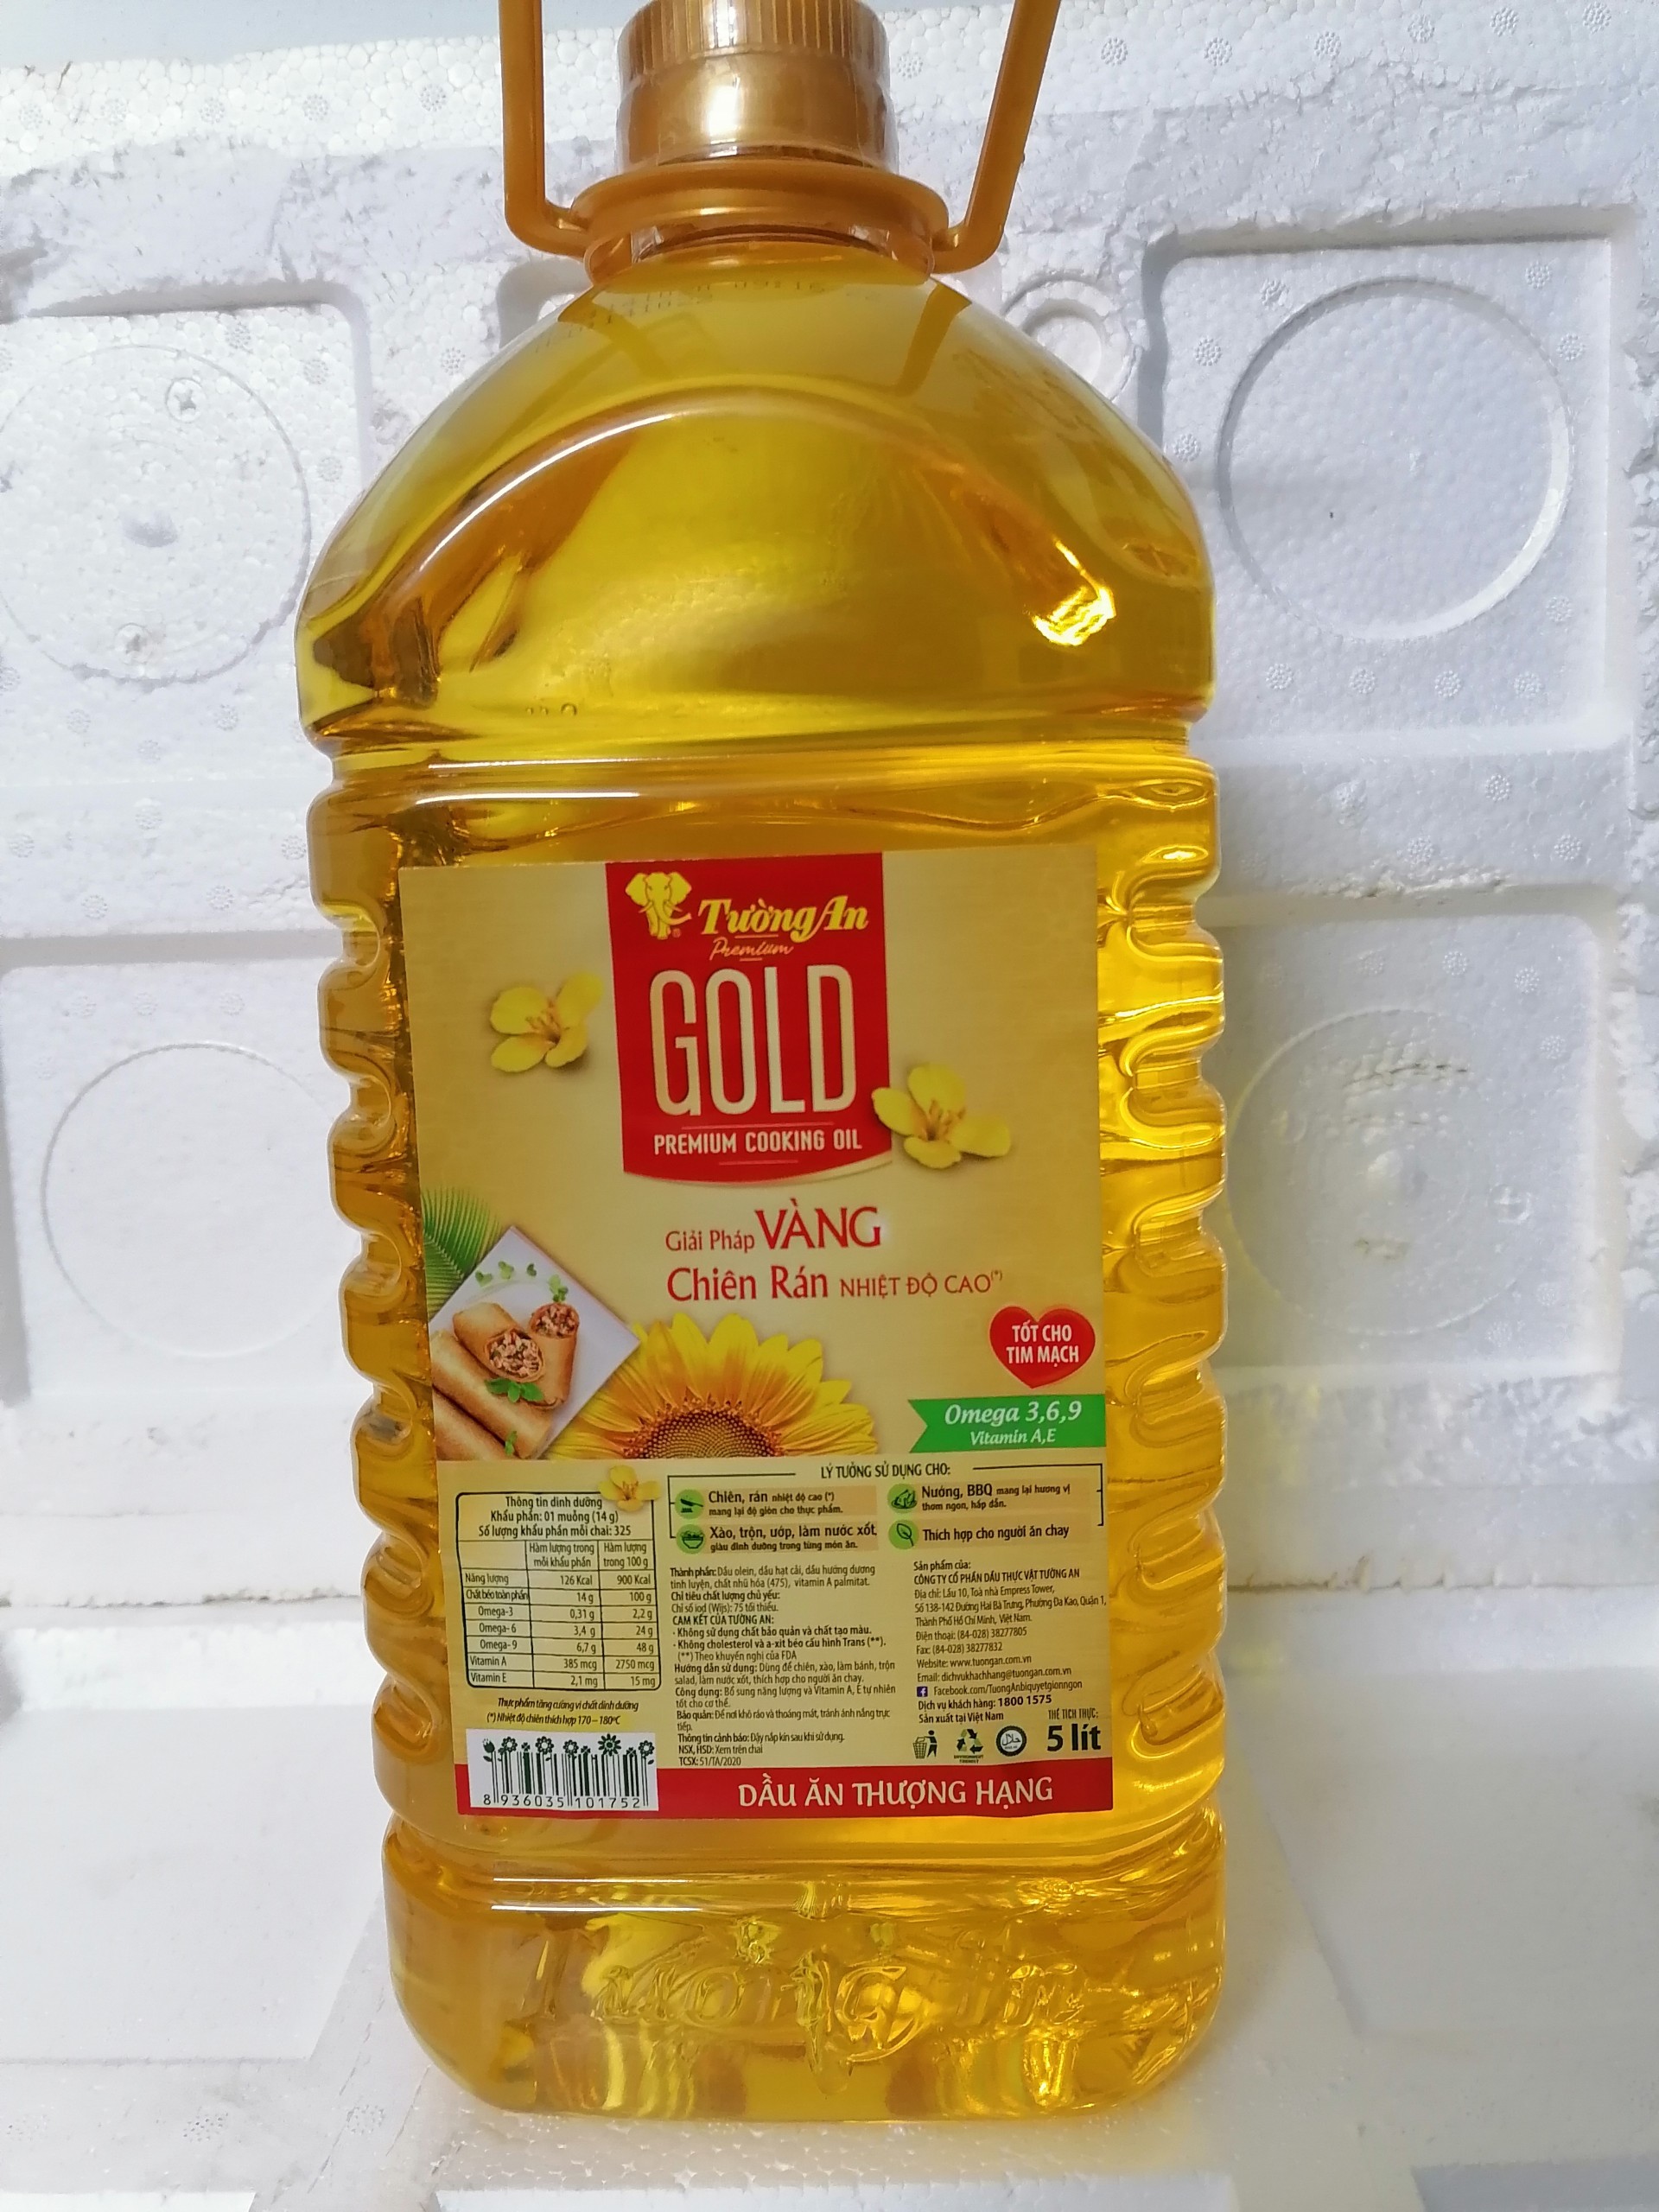 [5 Lít – Gold] Dầu ăn thượng hạng [VN] TƯỜNG AN Gold Cooking Oil (halal) (bph-hk5)